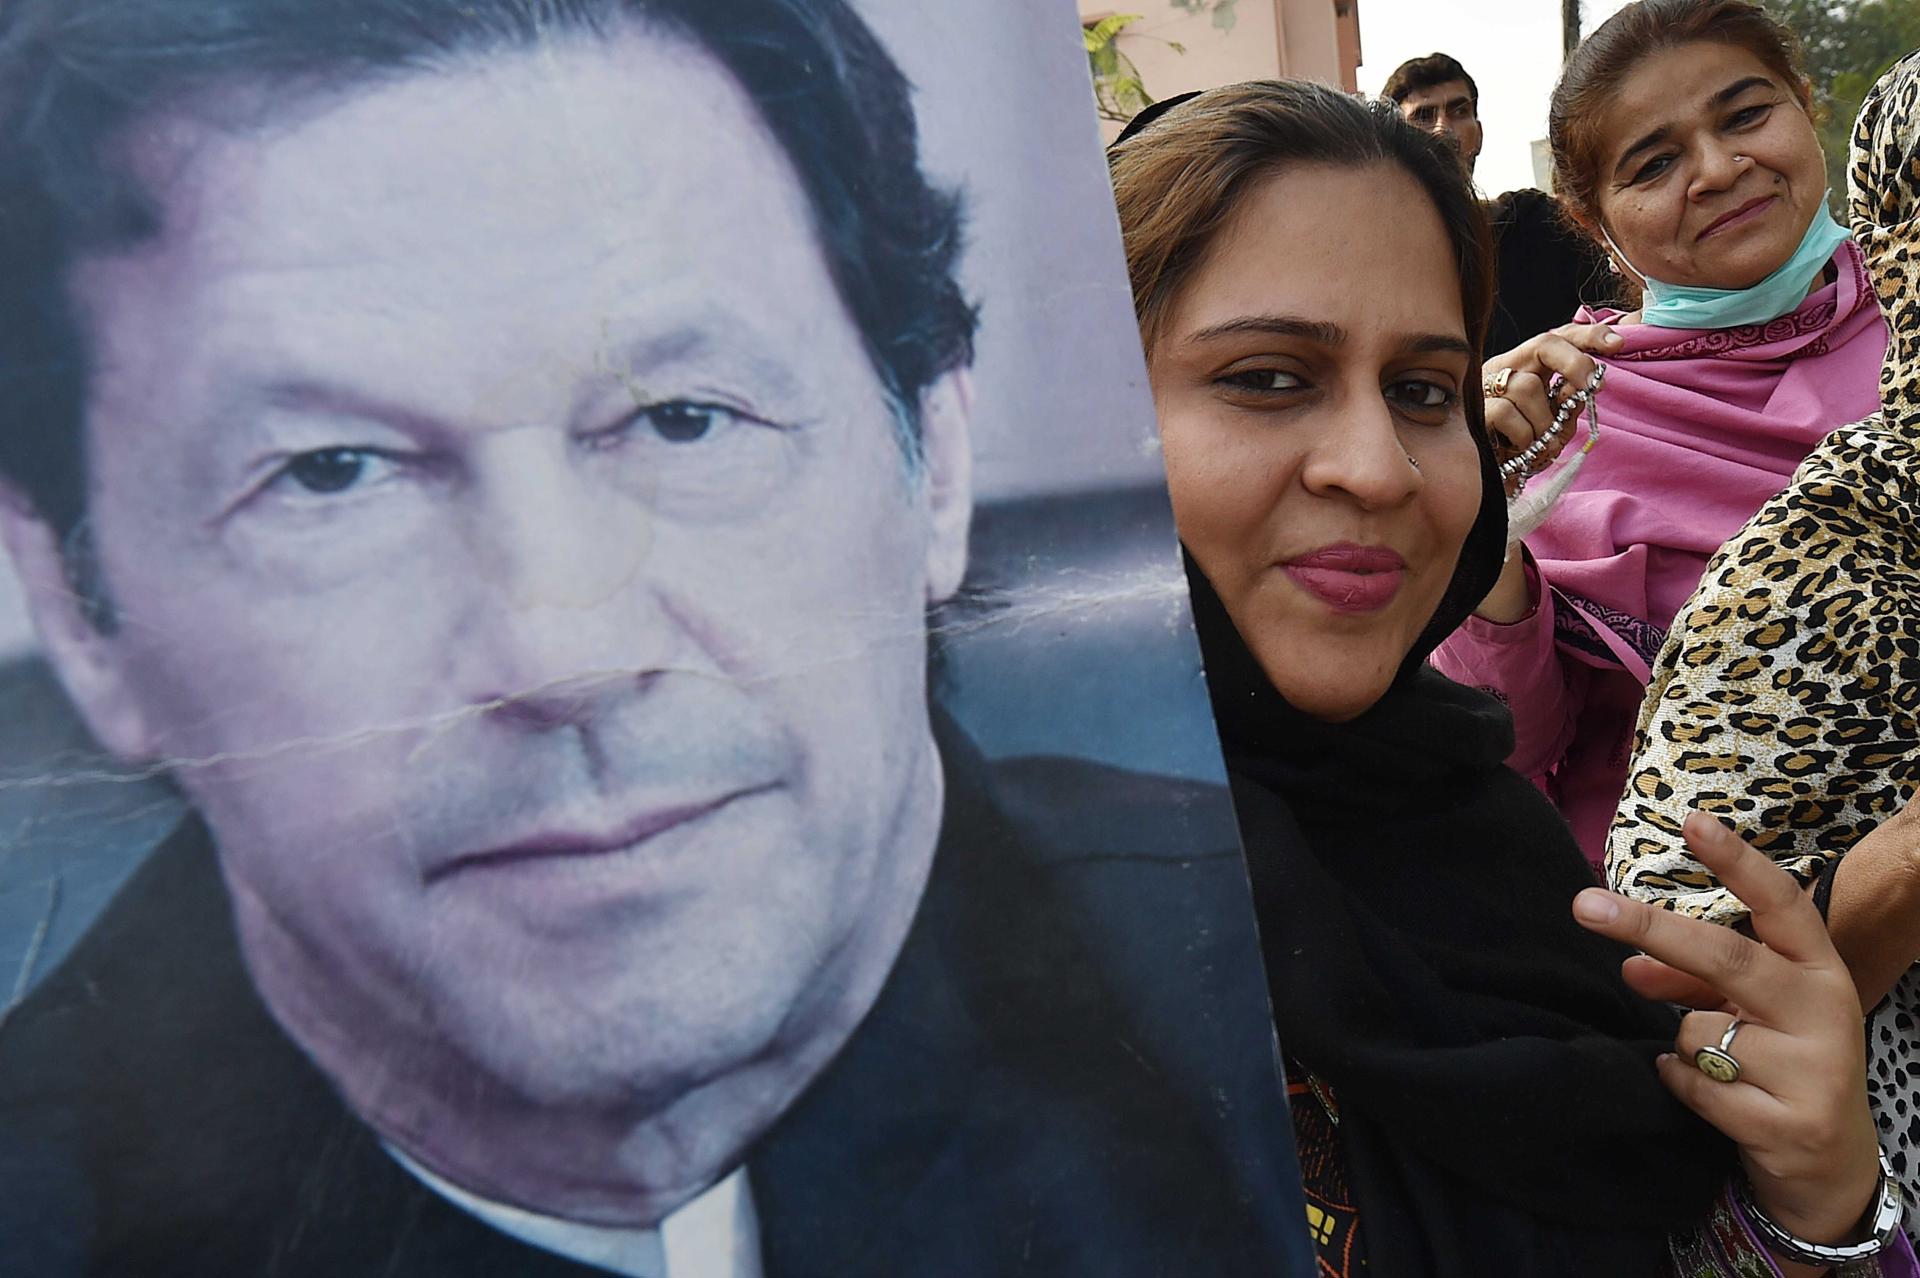 Foto de archivo de una pancarta con la imagen del exprimer ministro de Pakistán Imran Khan. EFE/EPA/SHAHZAIB AKBER